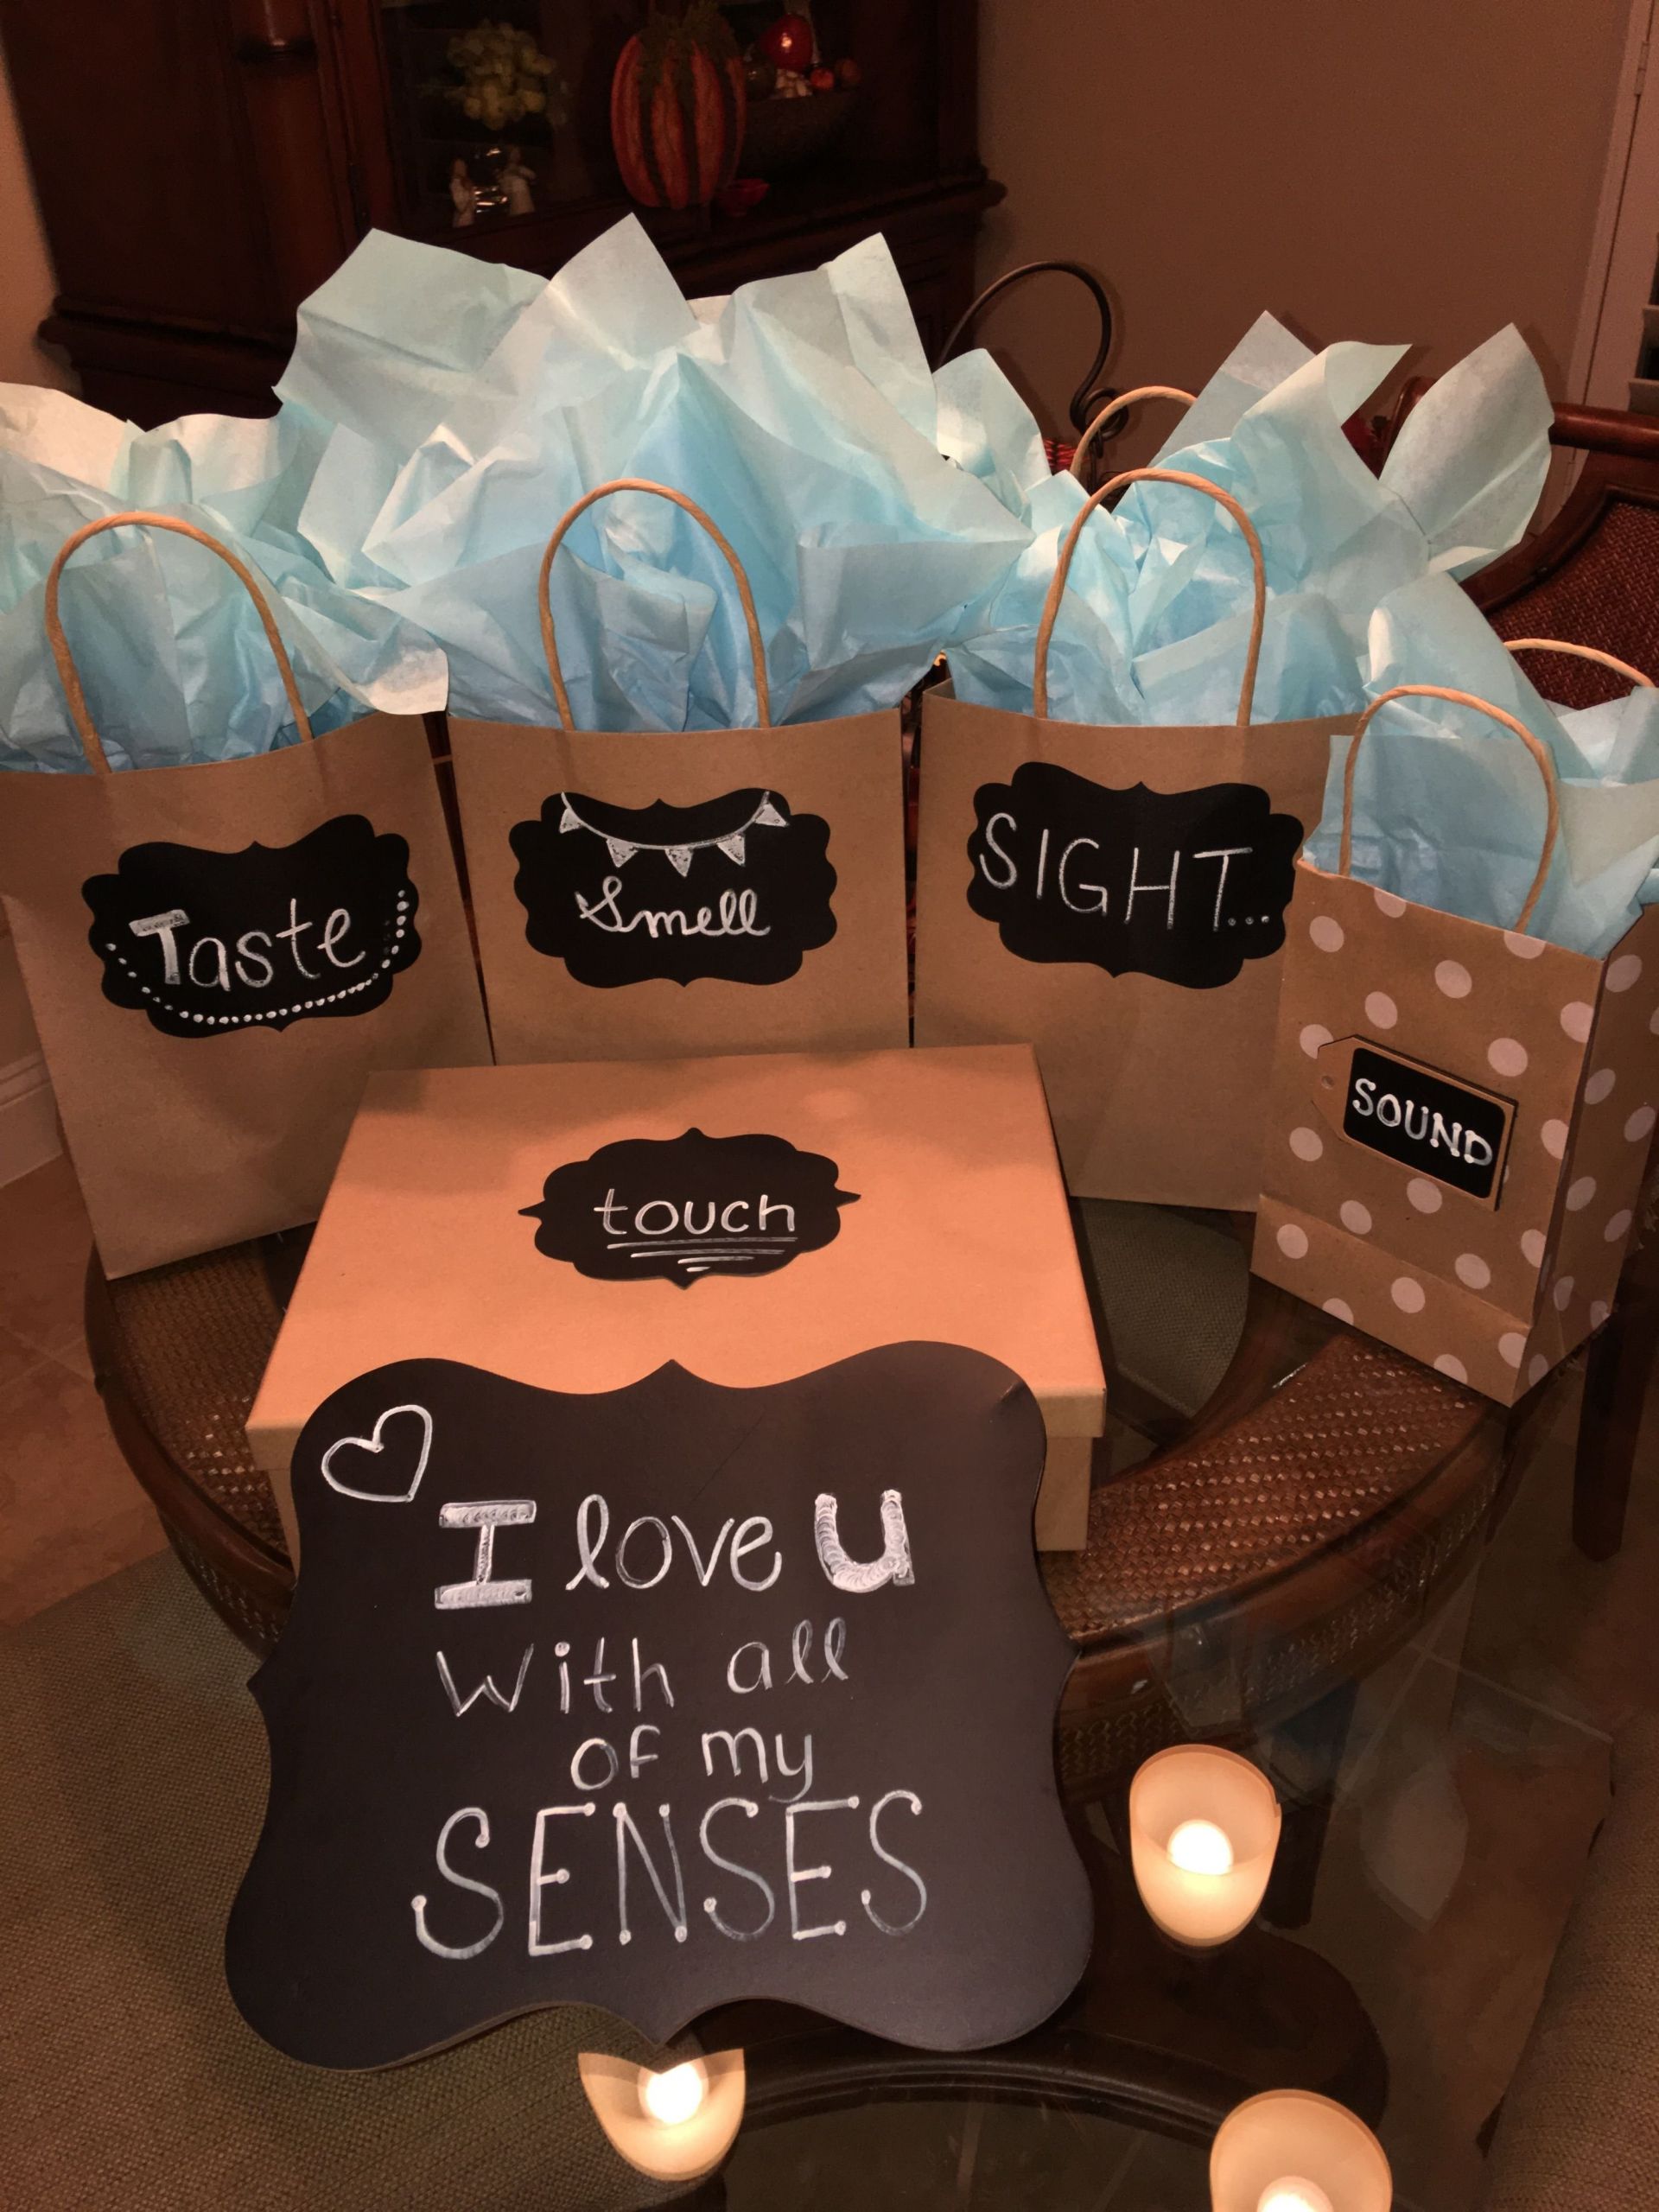 Cute Diy Gift Ideas For Boyfriend
 10 Lovable Romantic Birthday Gift Ideas Boyfriend 2020